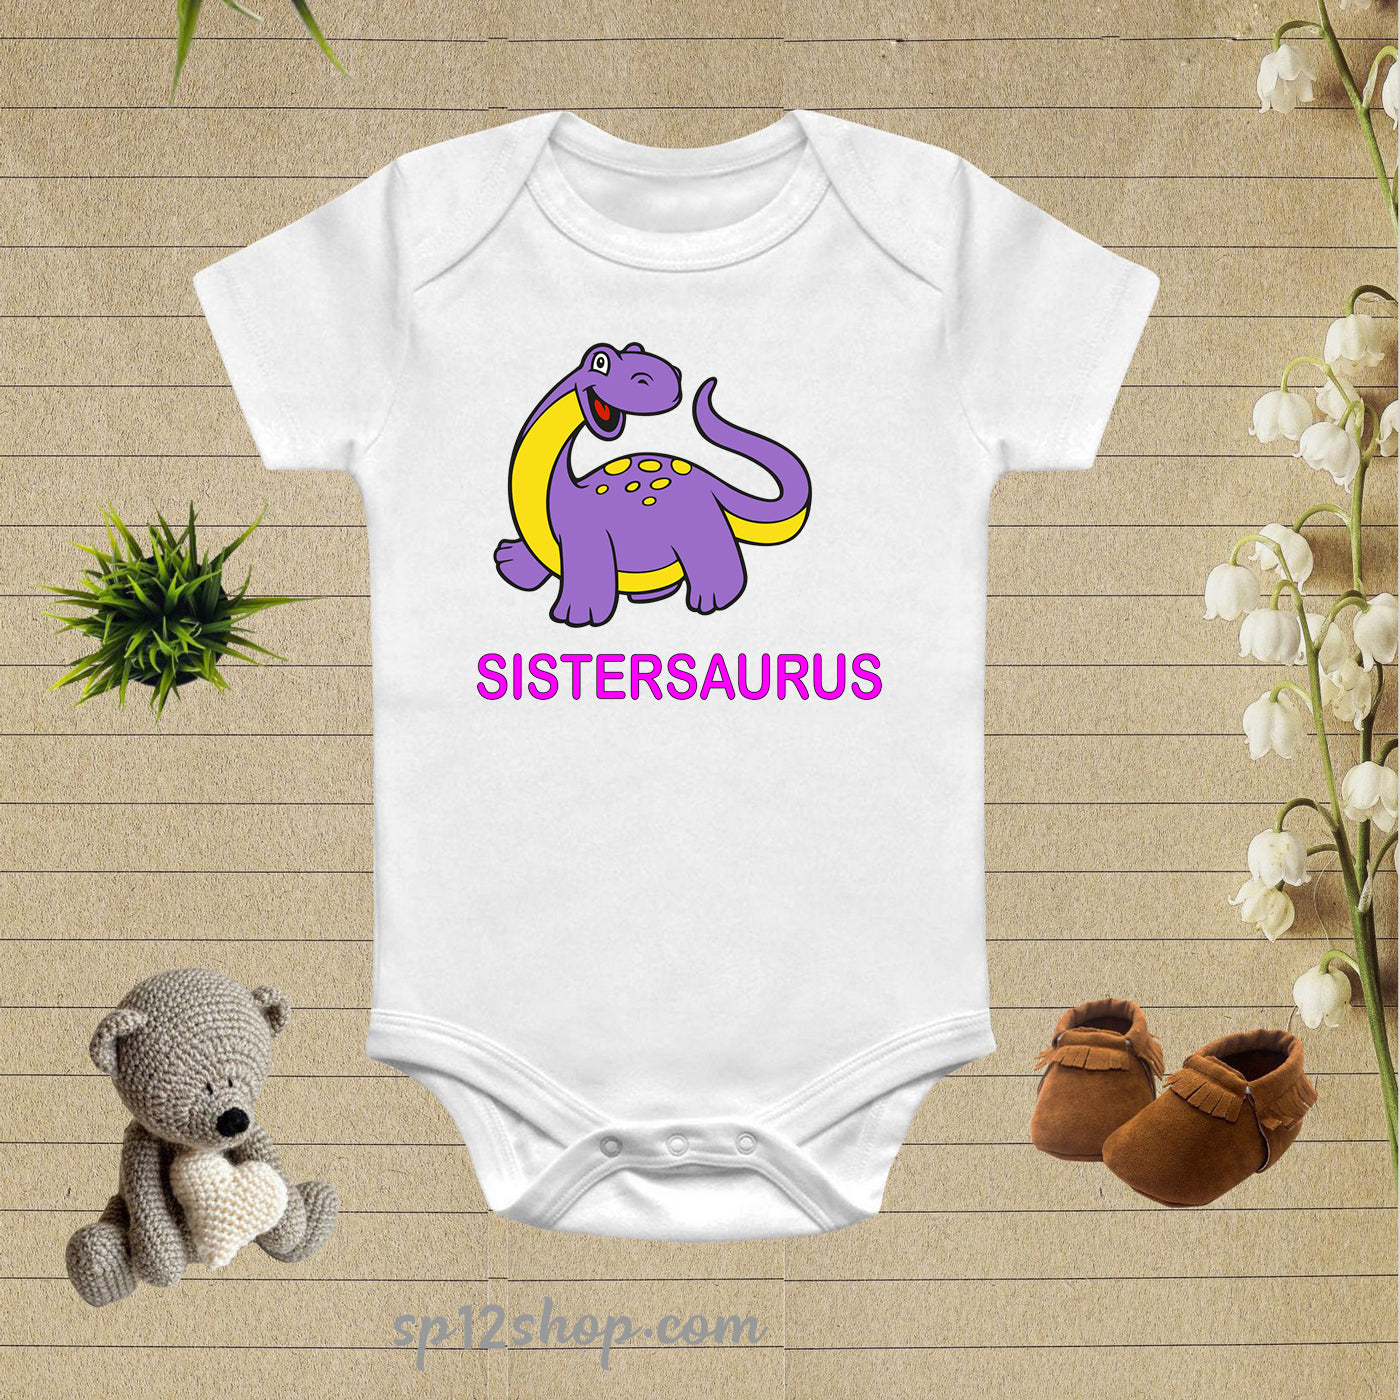 Sistersaurus Funny Baby Bodysuit Onesie Gift Tee